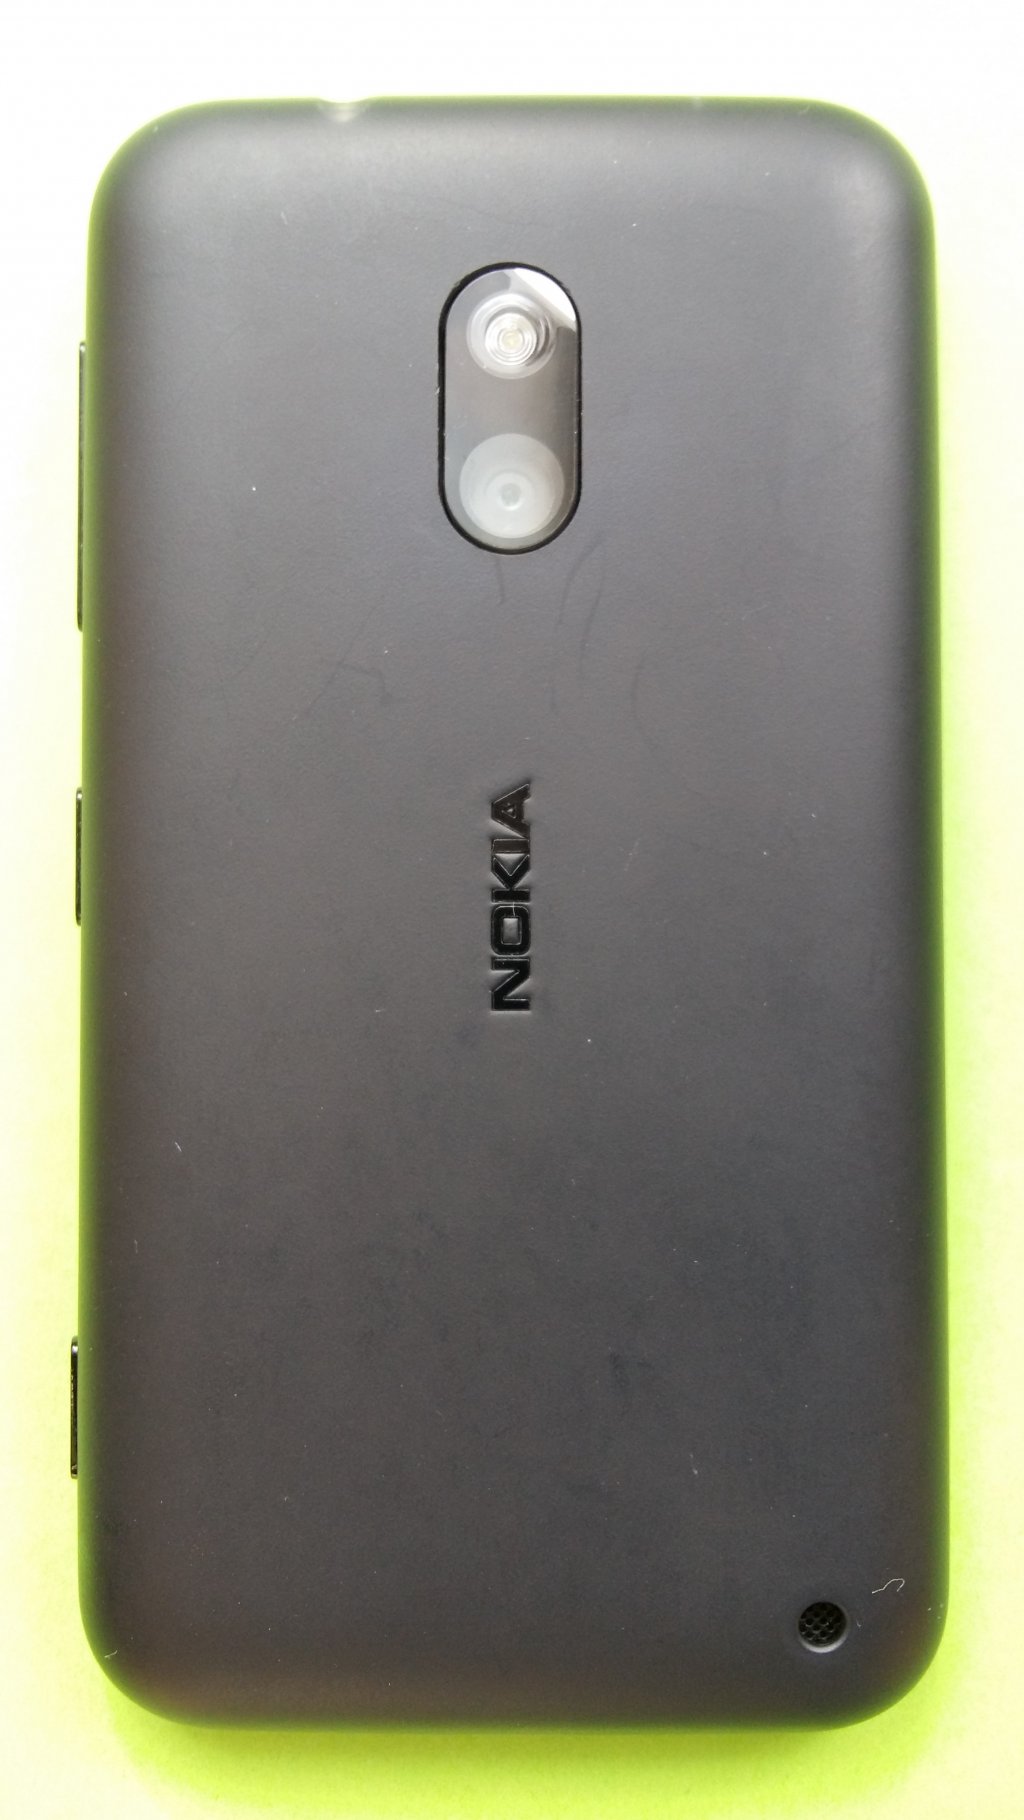 image-7889580-Nokia_620_Lumia_(1)2.w640.jpg